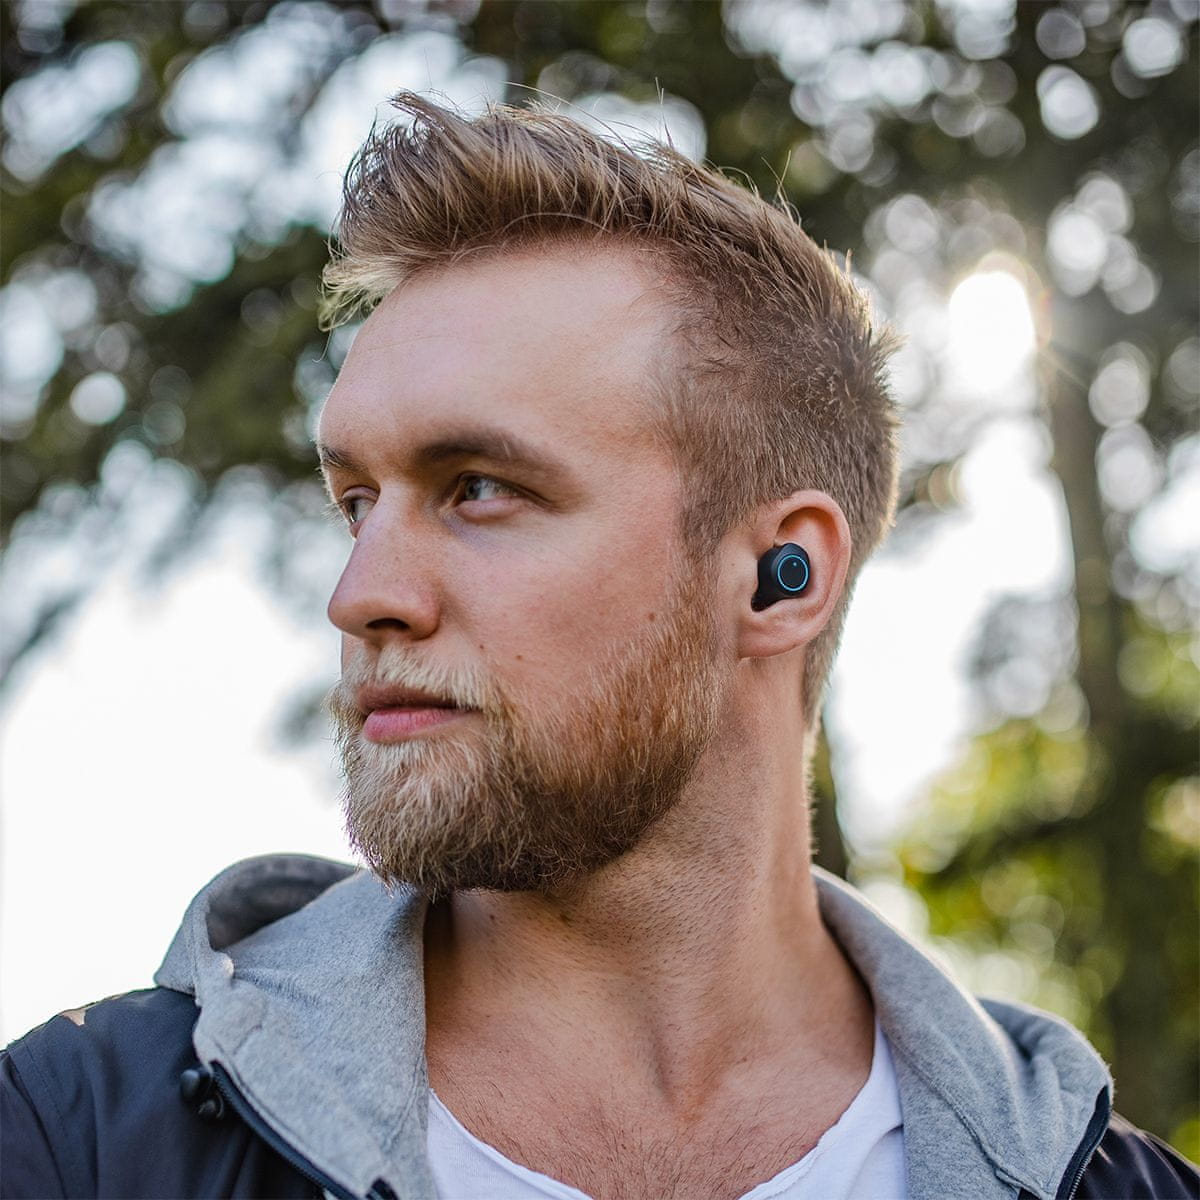 Bluetooth 5.0 niceboy hive drops fülhallgató füldugós verziója valódi vezeték nélküli nagyszerű hangzással maxxbass usbc töltés technológia érintőképernyős telefon kihangosítás intelligens gombok autópárosítás ipx4 töltőbölcső vízálló 3ó állóképesség modern kialakítás